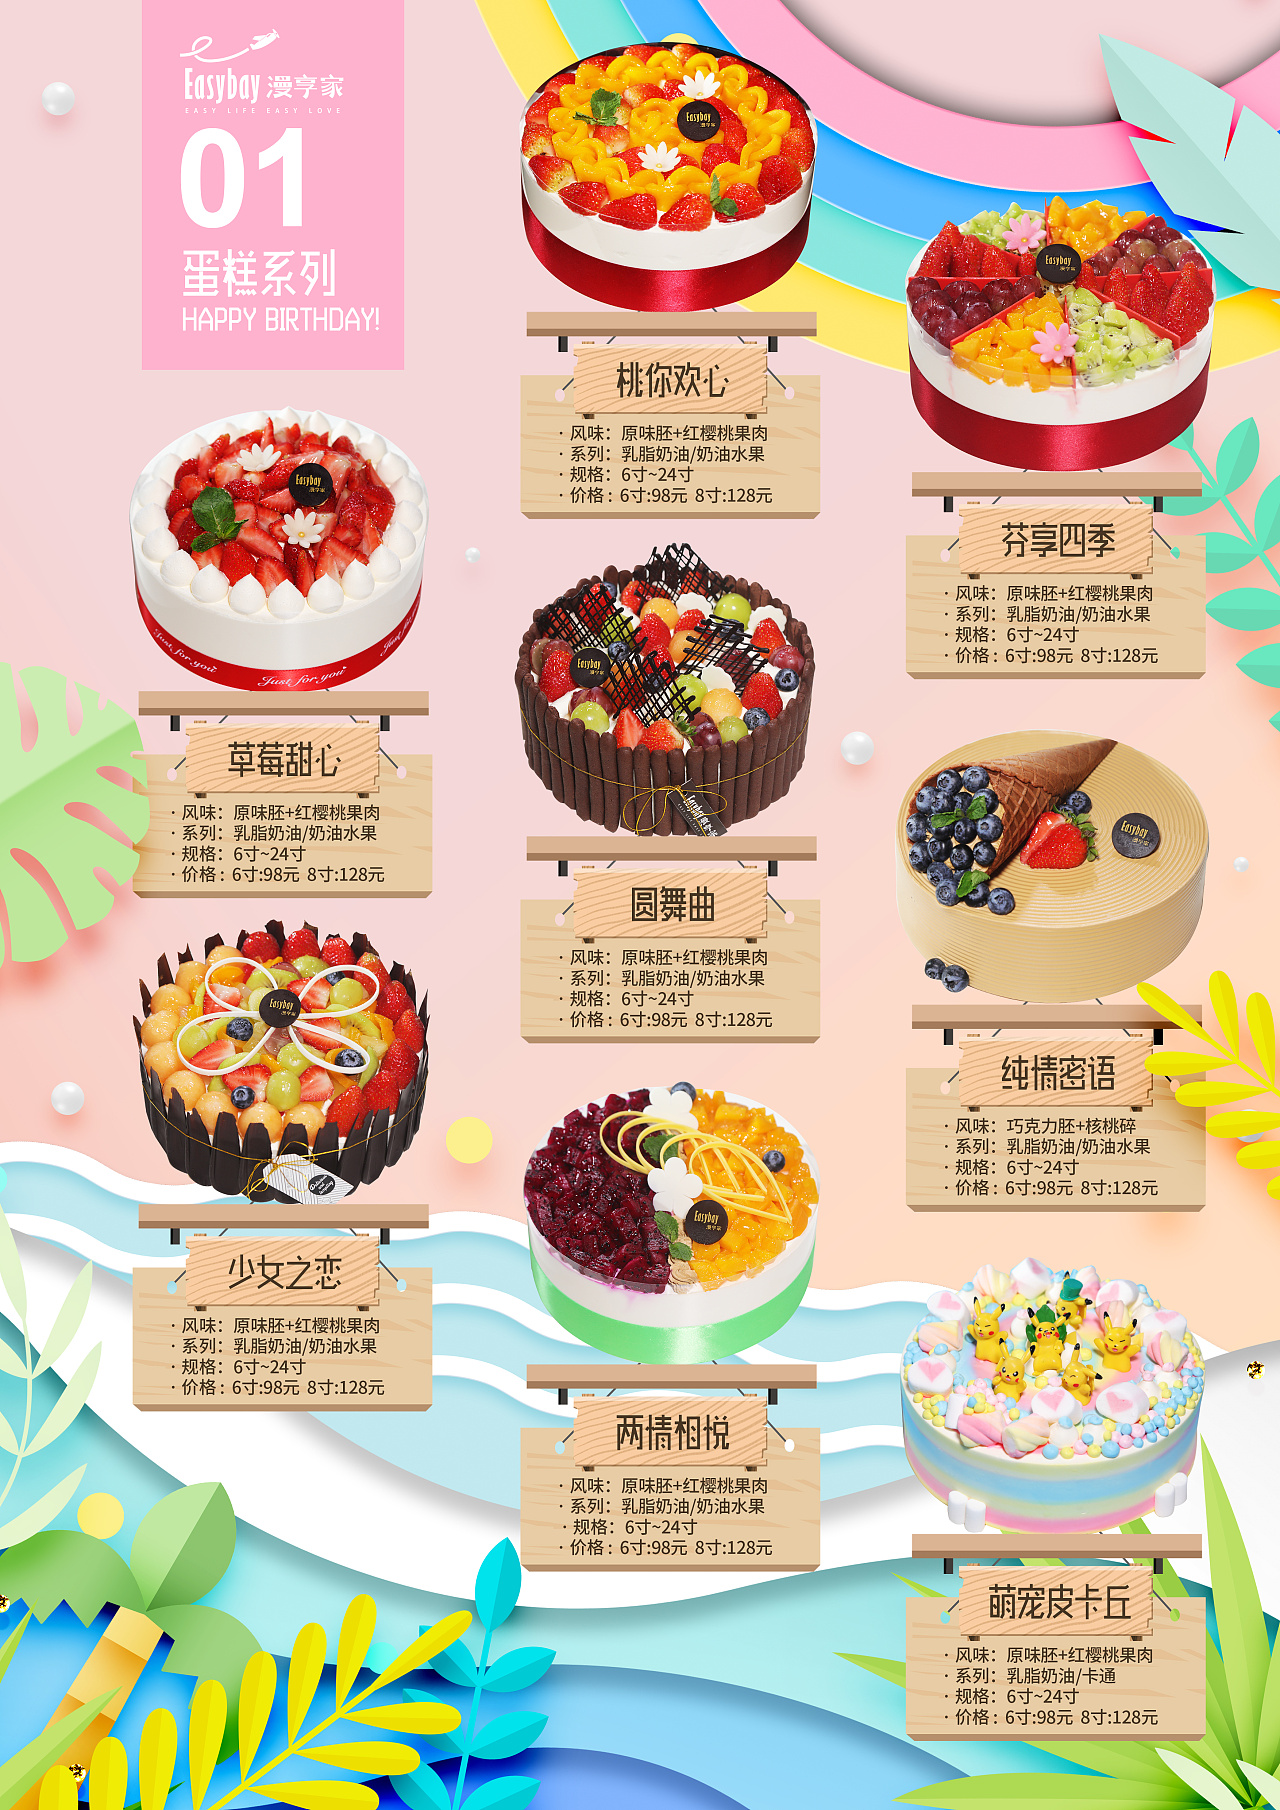 【周边创作】甜品蛋糕 蛋糕图册